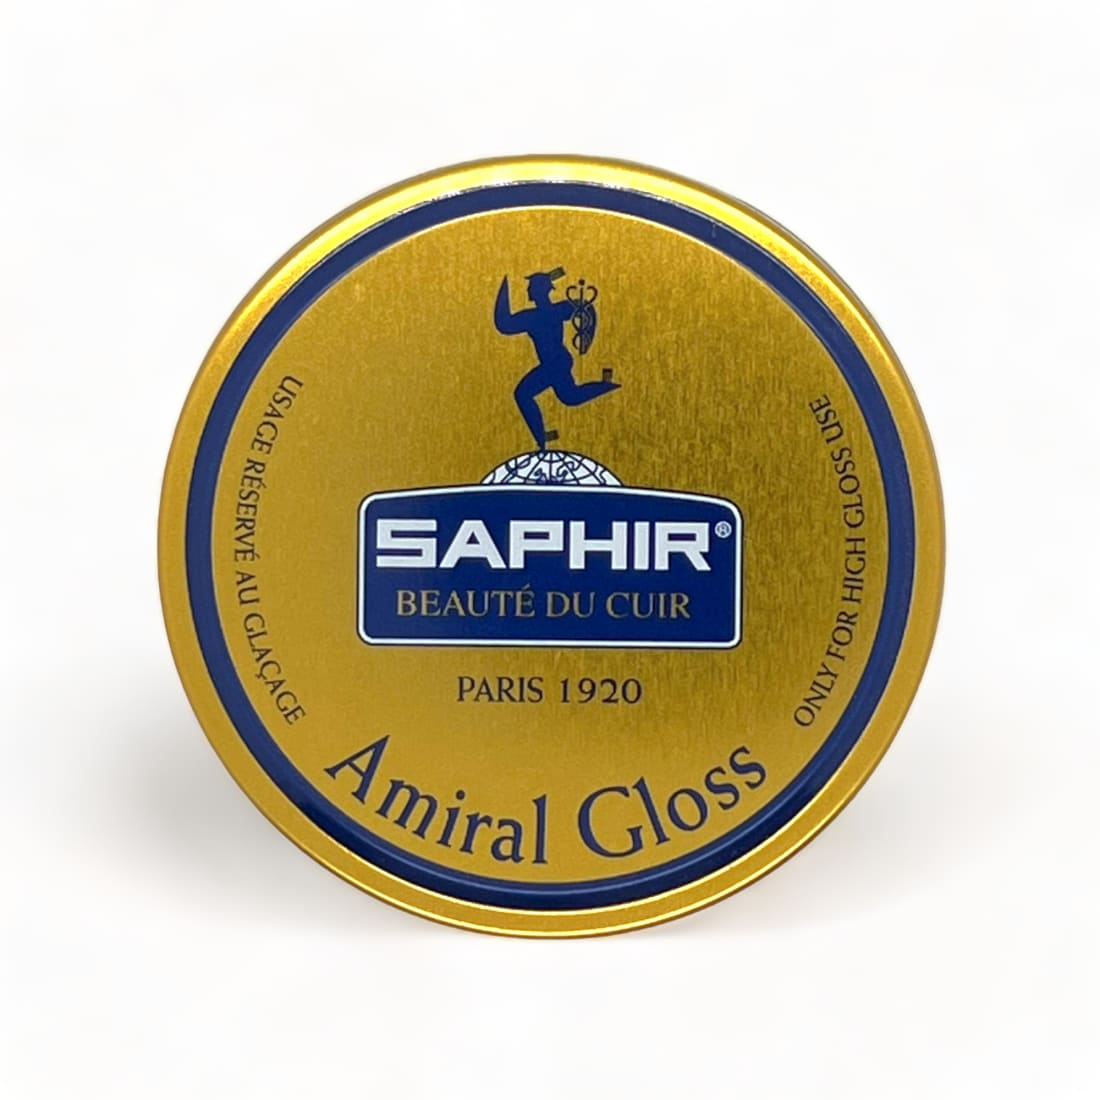 Cirage Amiral Gloss incolore pour le glaçage - Saphir - 50